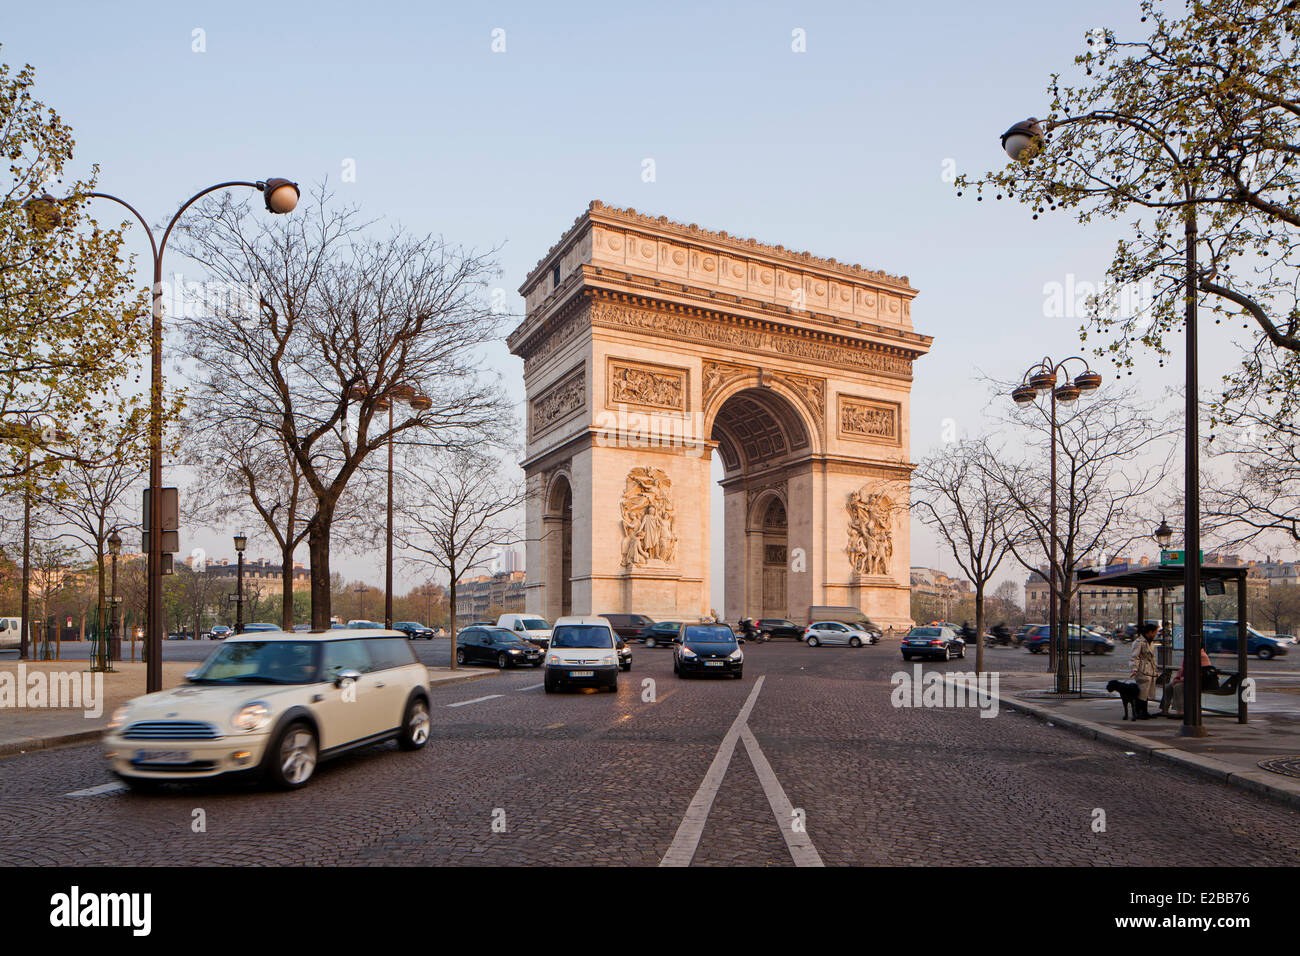 France, Paris, Arc de Triomphe Sur la Place de l'Etoile Banque D'Images